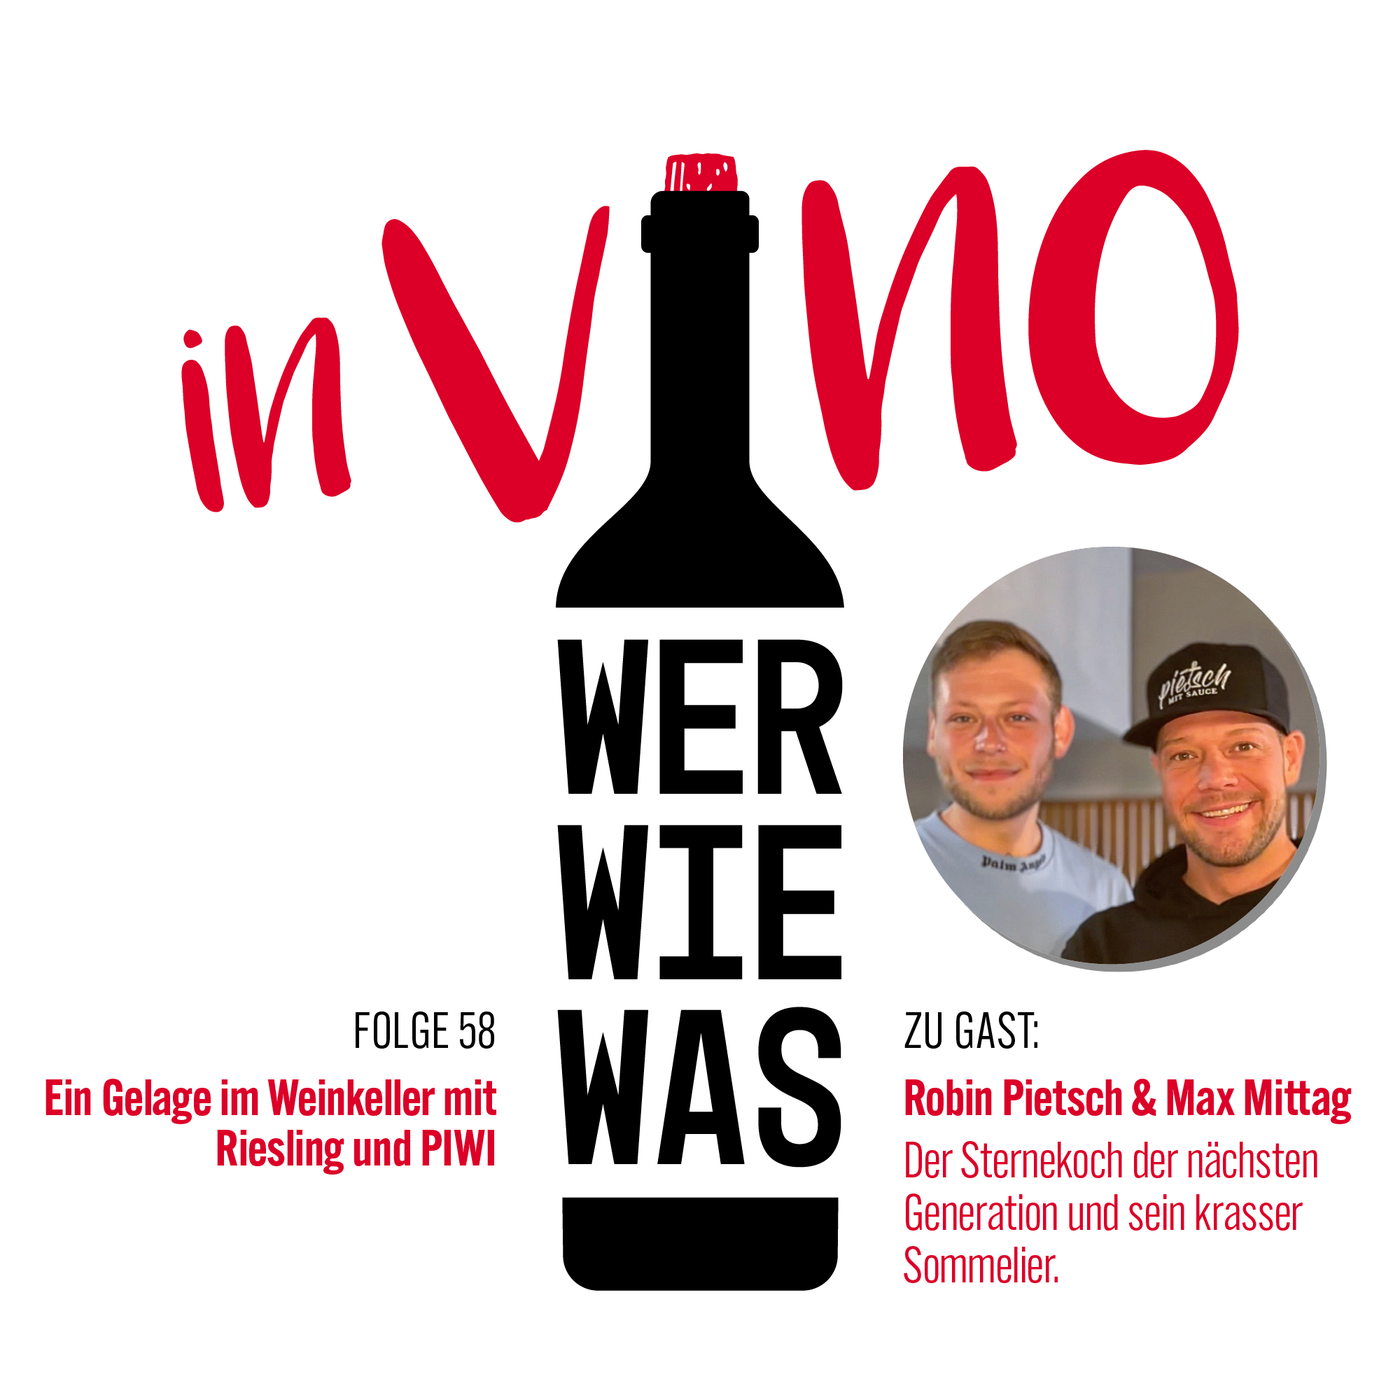 Robin Pietsch und Max Mittag: Ein Gelage im Weinkeller mit Riesling und PIWI